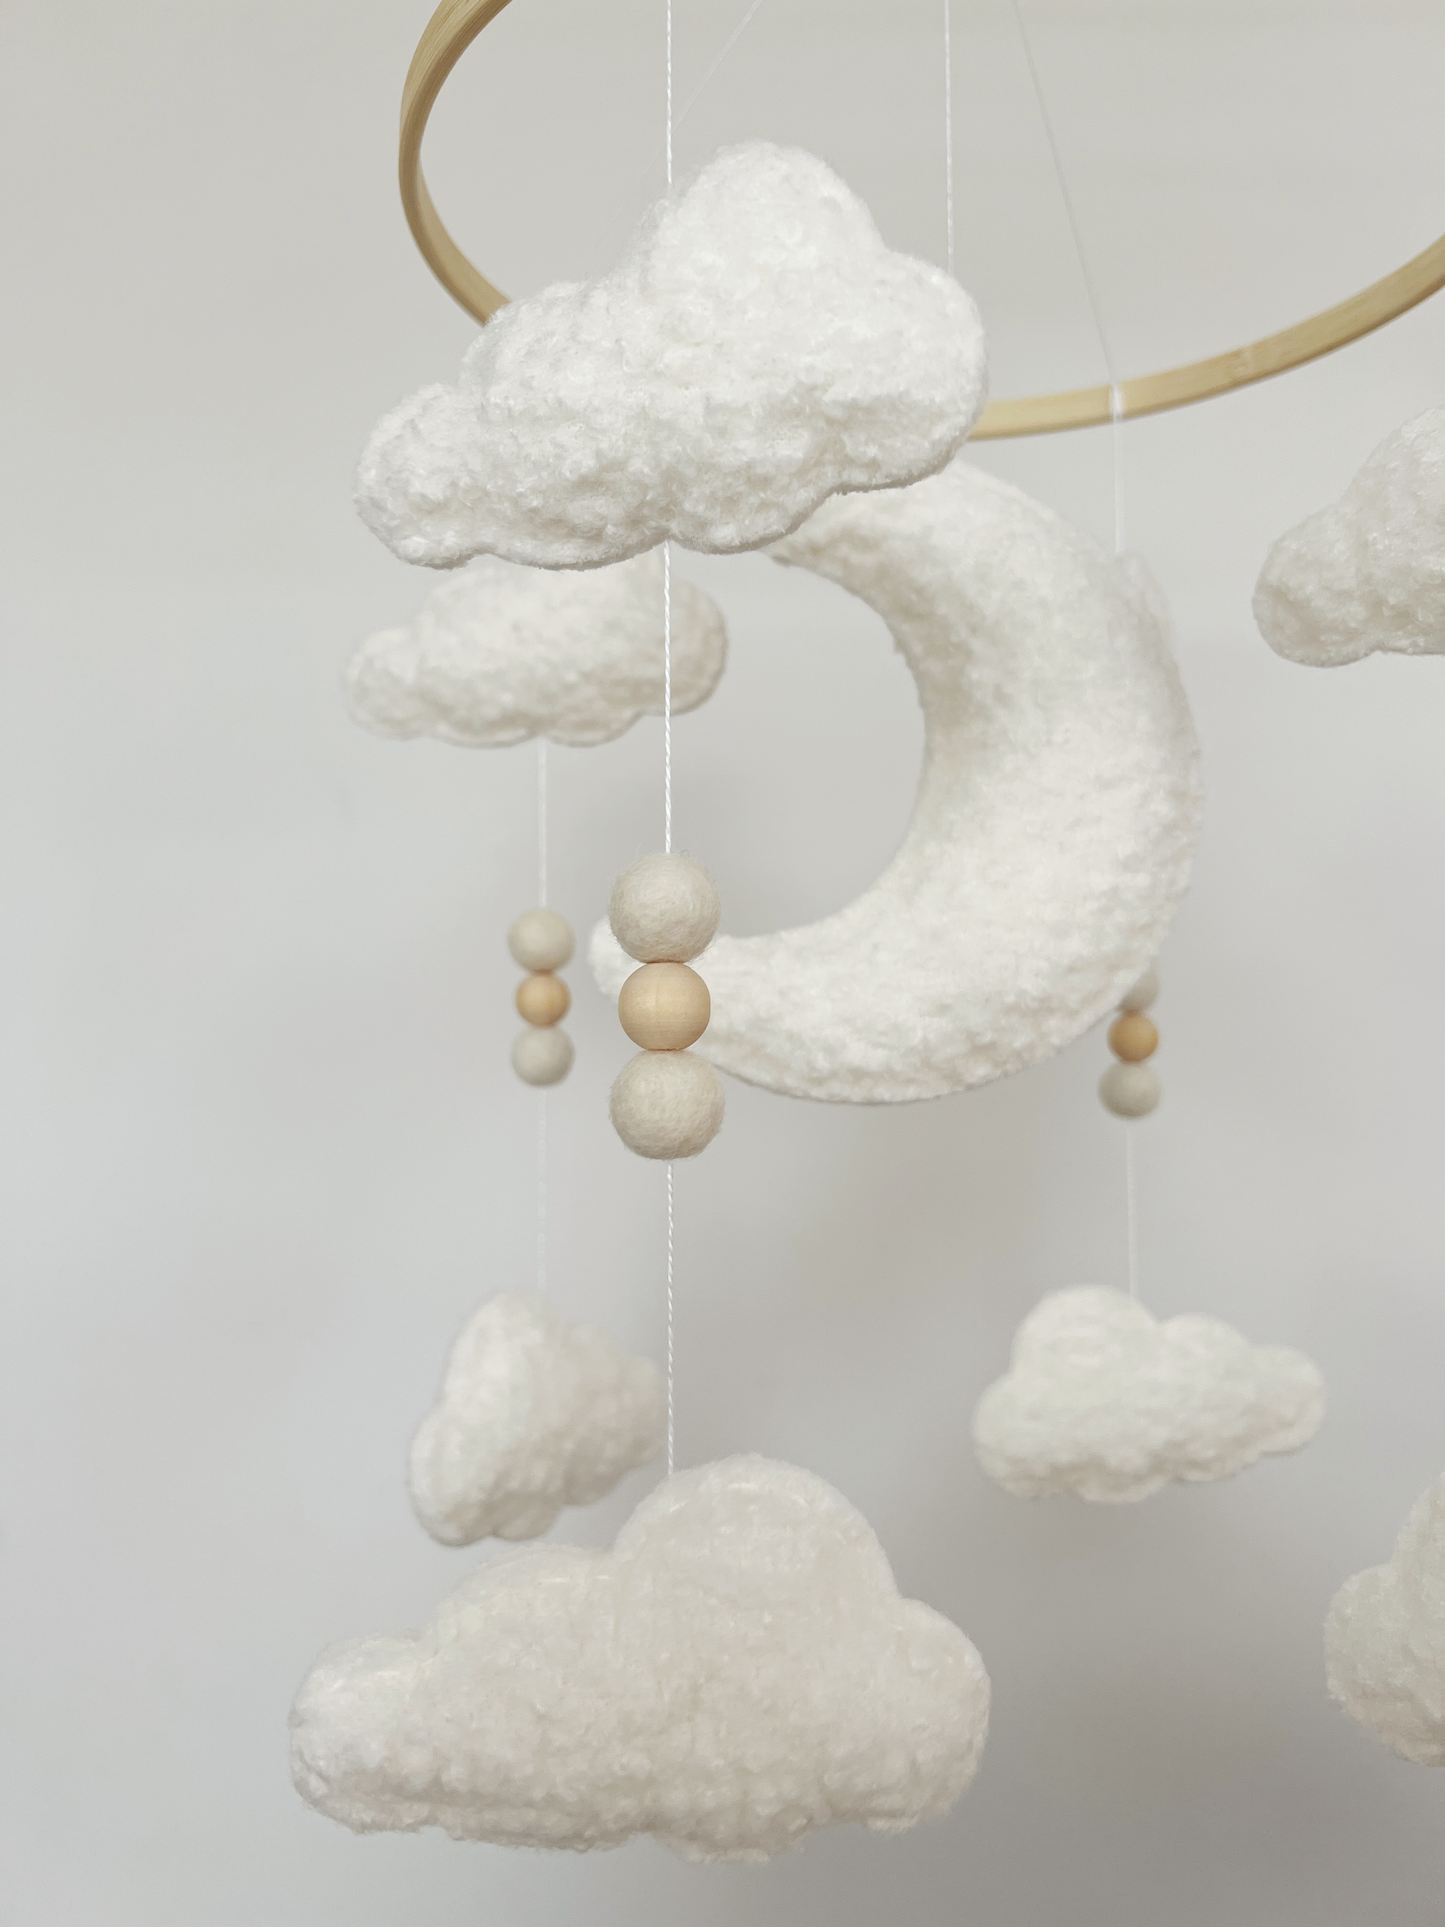 Moon & Clouds Cot Mobile - Ivory Bouclé